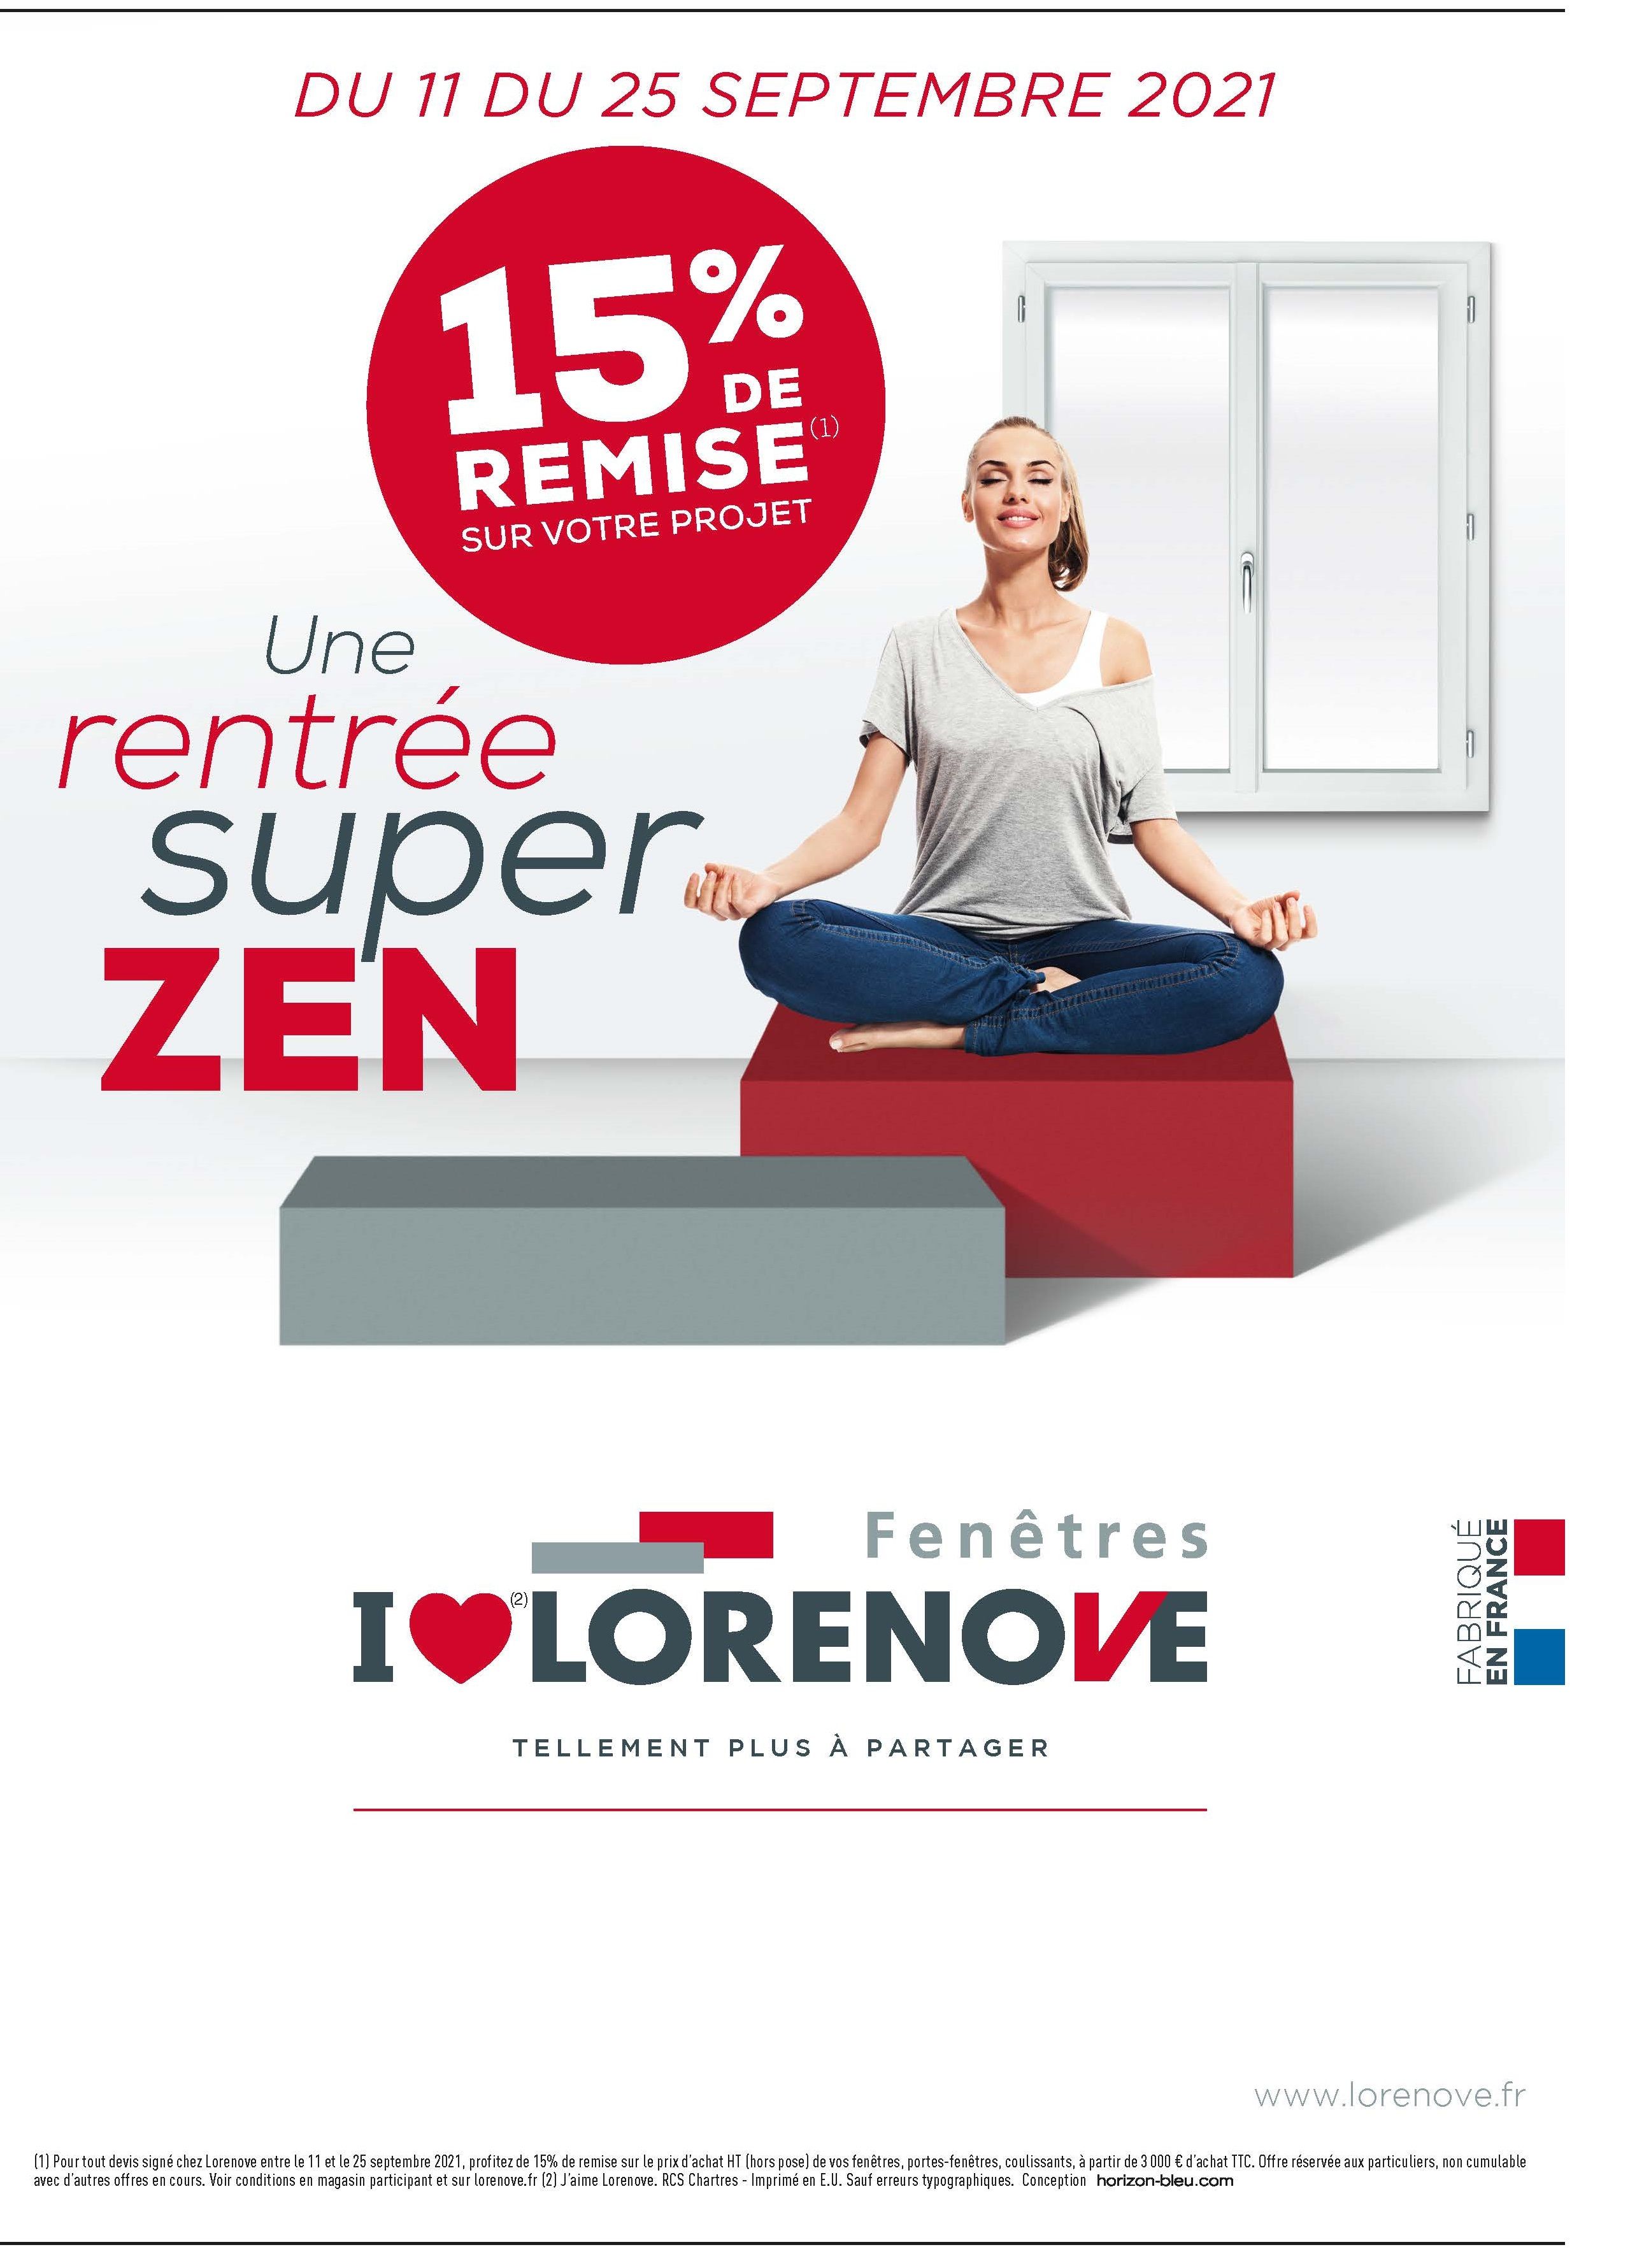 Lorenove propose une   » super rentrée zen  » avec une offre promotionnelle pour une isolation renforcée